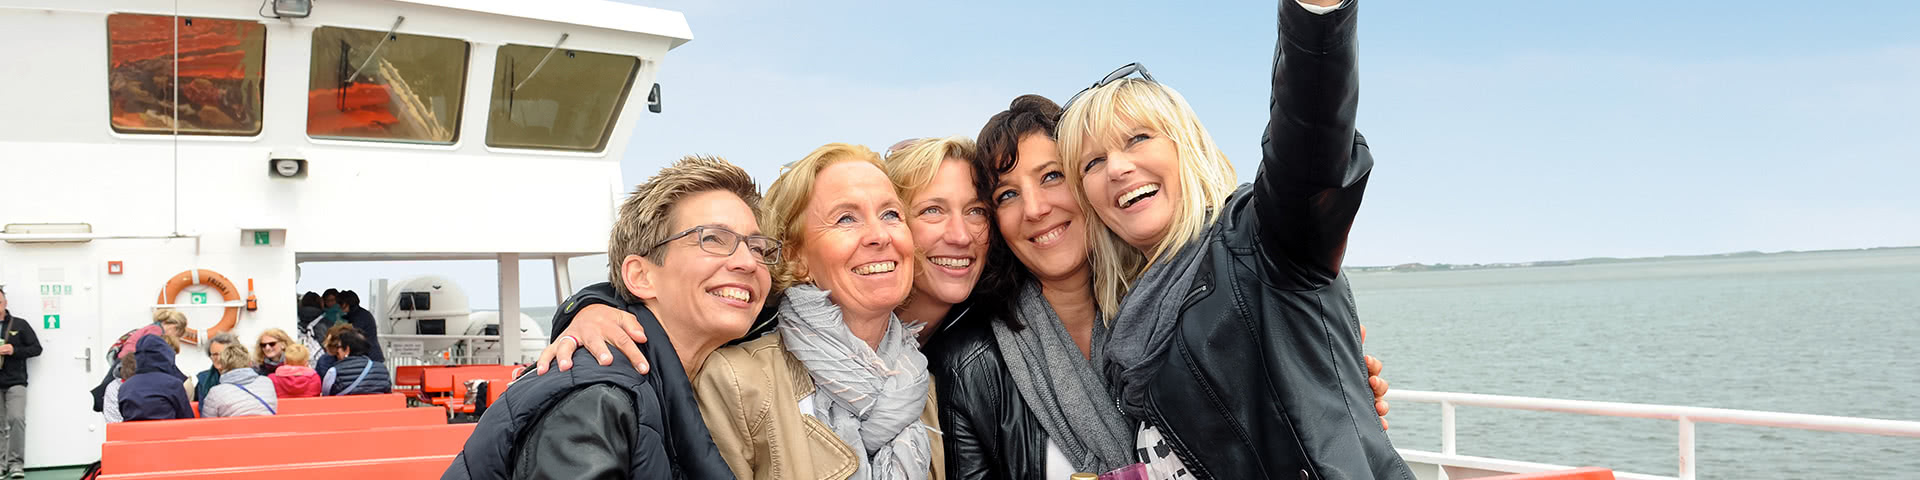 Frauengruppe macht Selfie auf einem Schiff auf Norderney